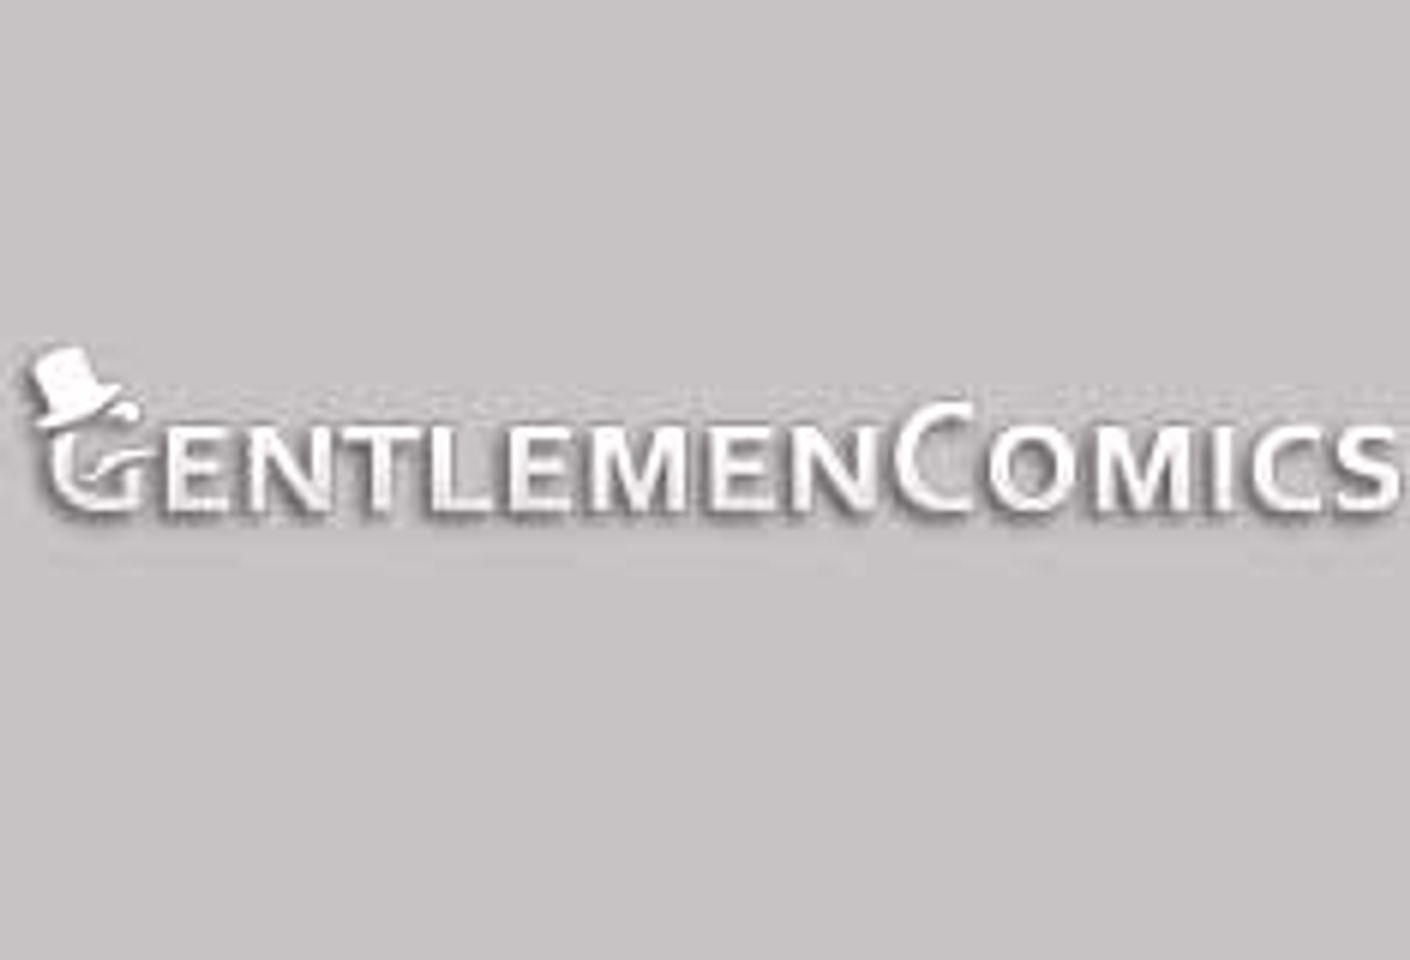 Gentlemen Comics Launches Official Website